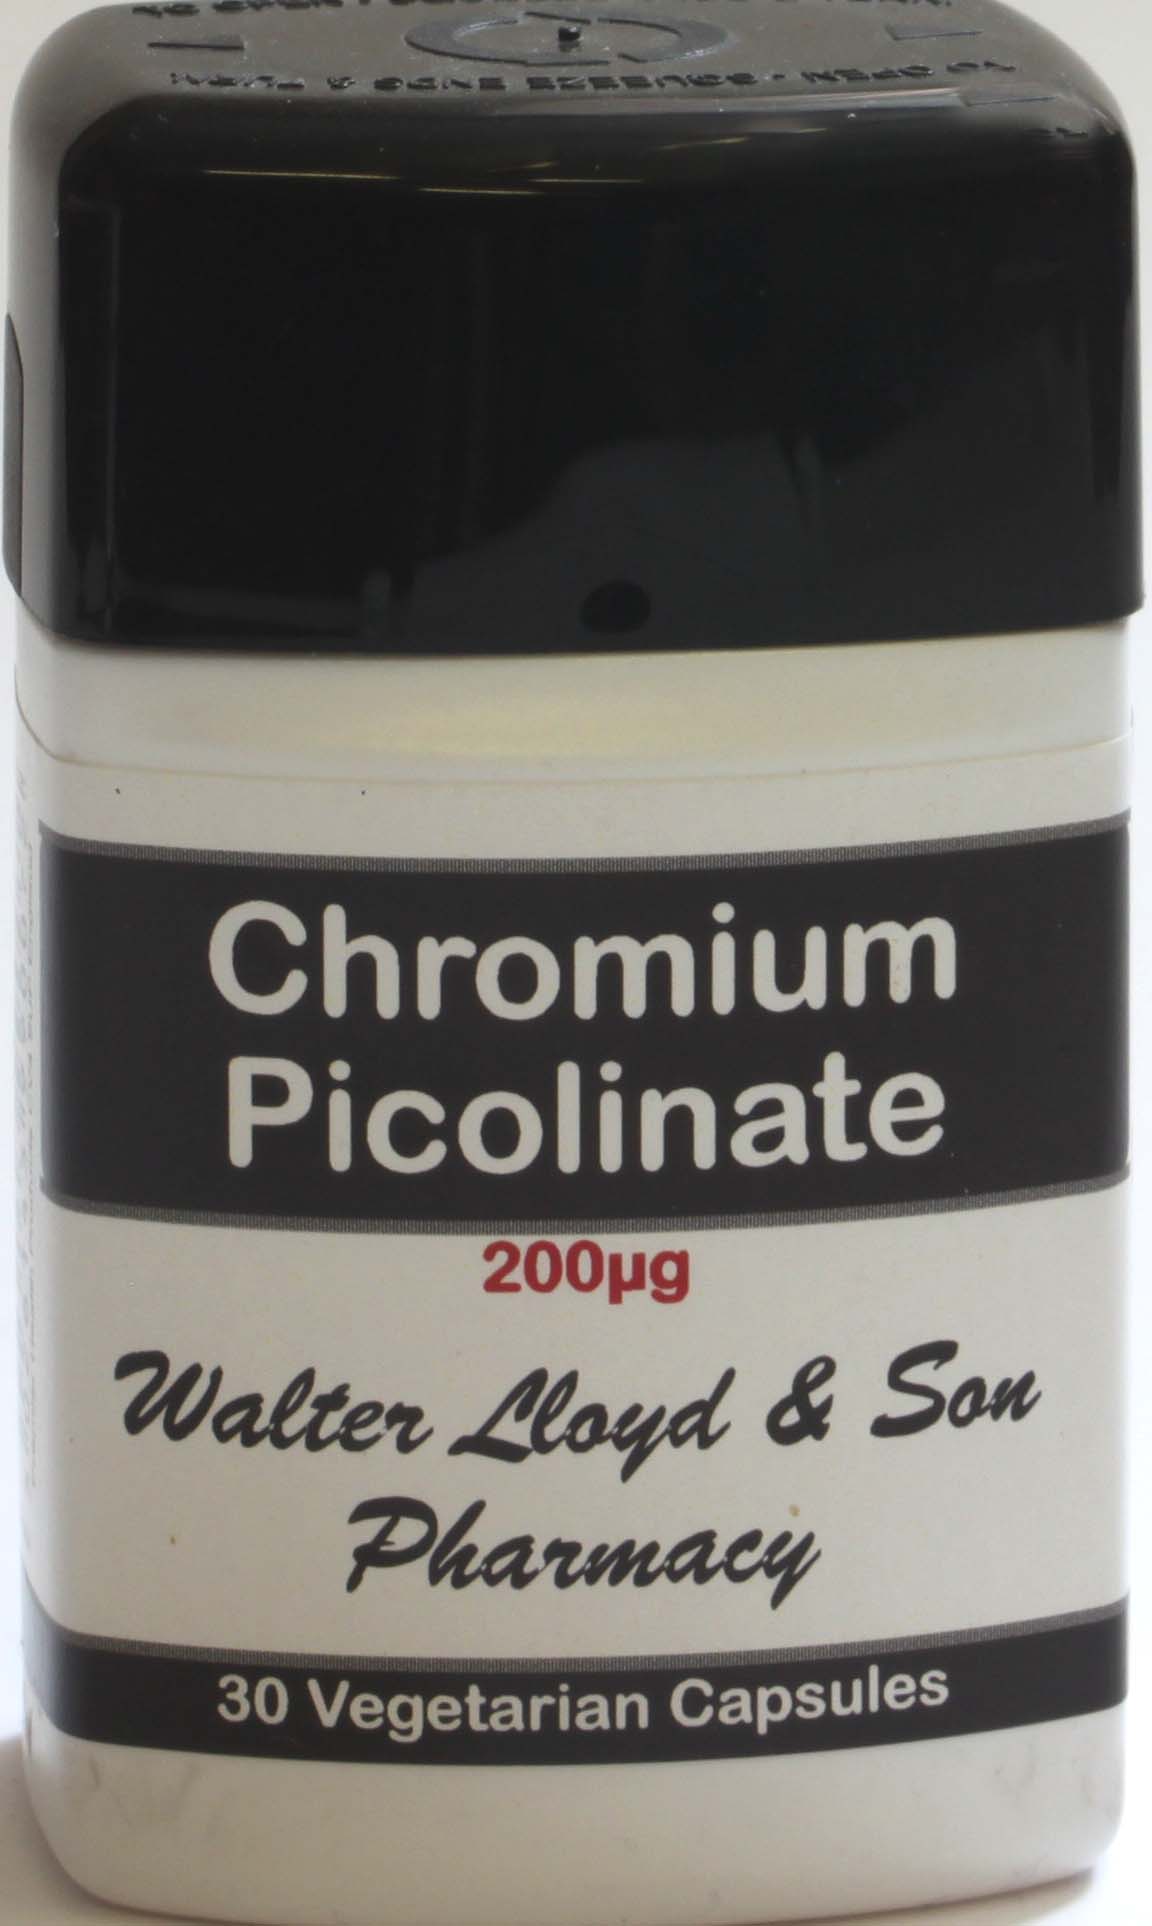 Chromium Picolinate 200ug - 30 Vegetarian Capsules